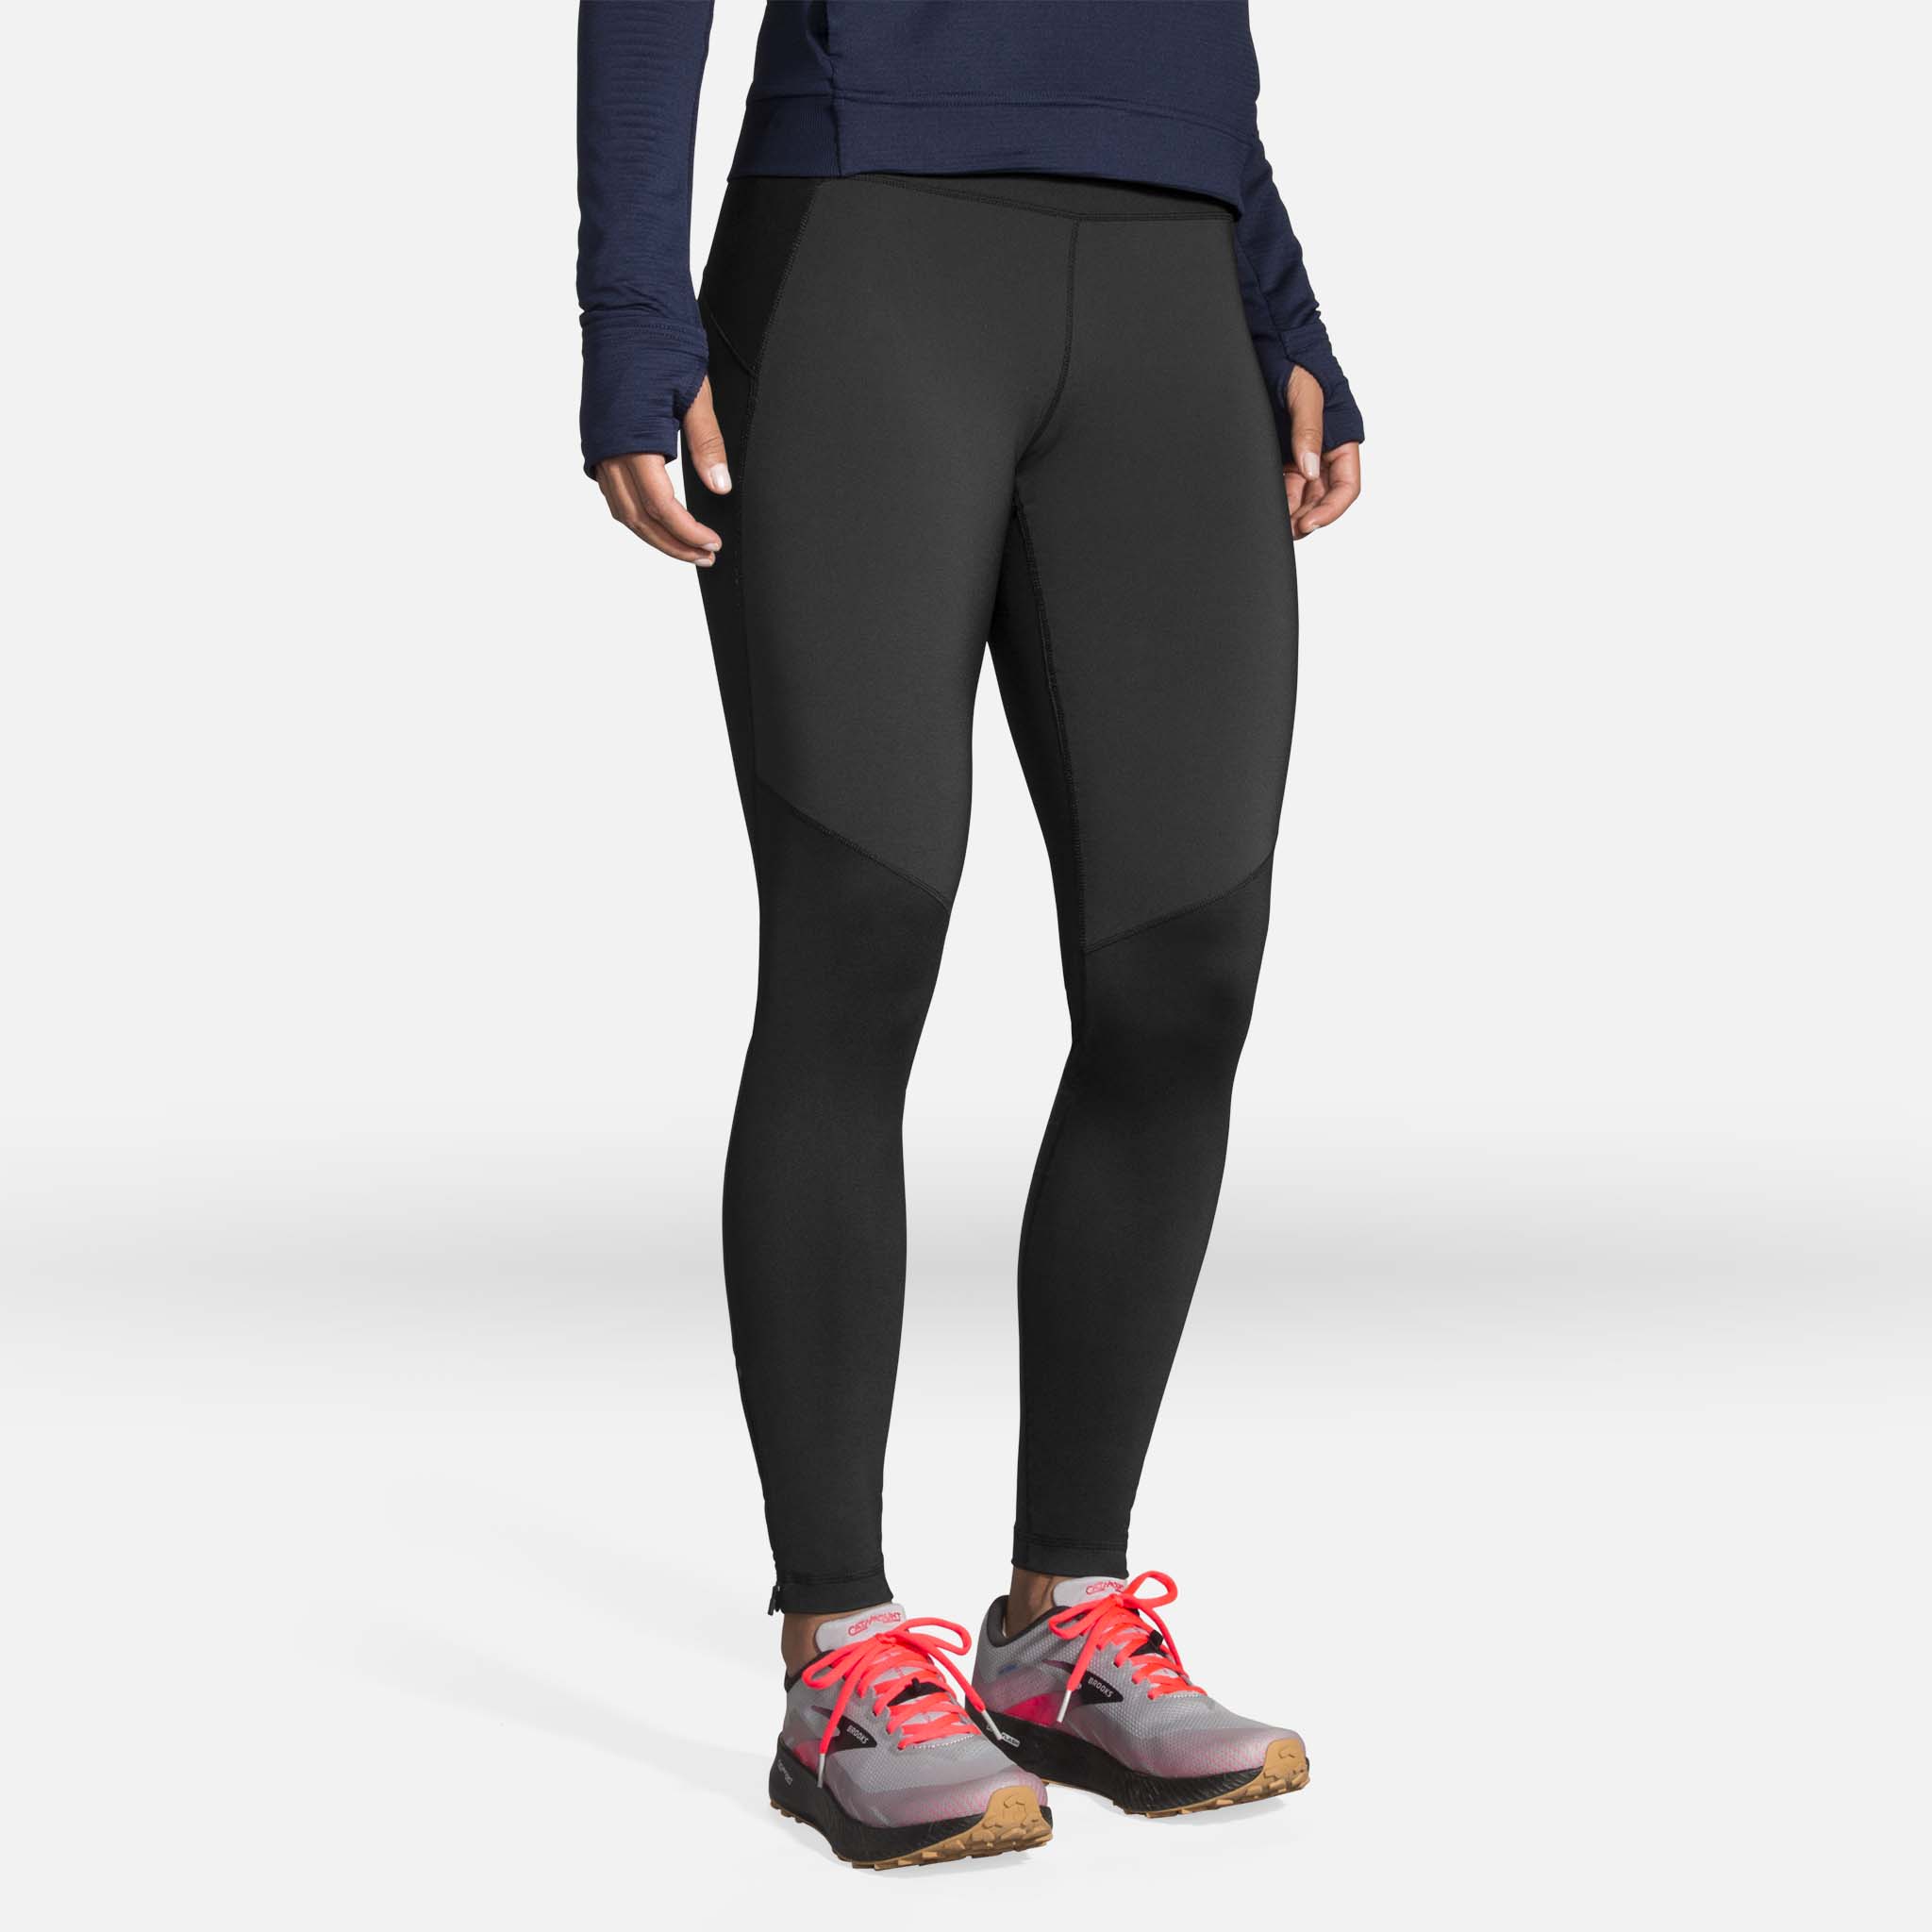 Brooks Run Within 7/8 Tight running leggings for women - Soccer Sport  Fitness